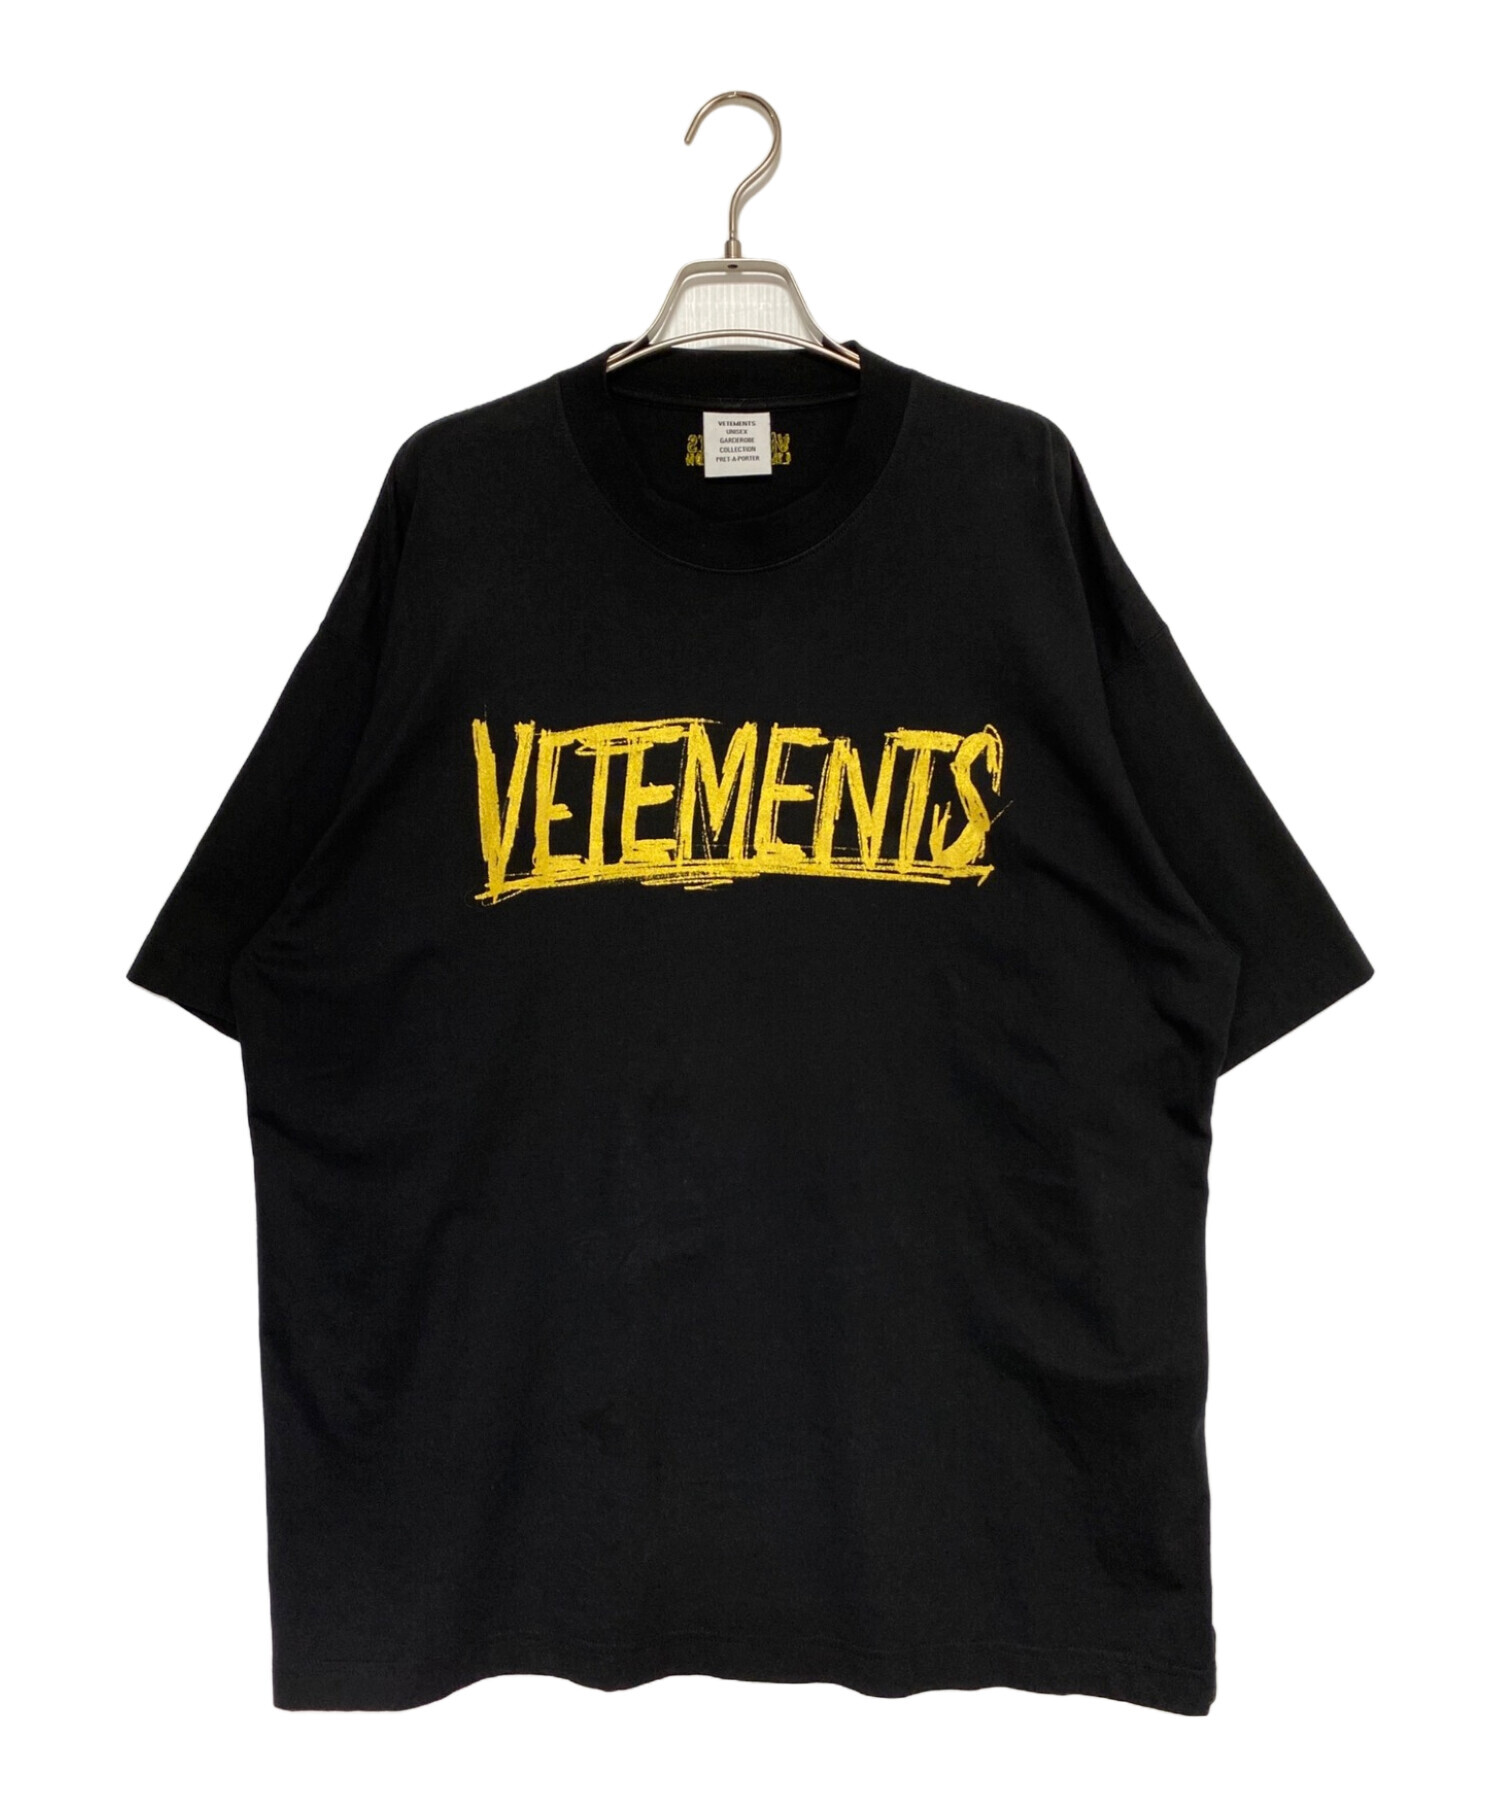 VETEMENTS (ヴェトモン) ワールドツアーロゴプリントTシャツ ブラック サイズ:XS